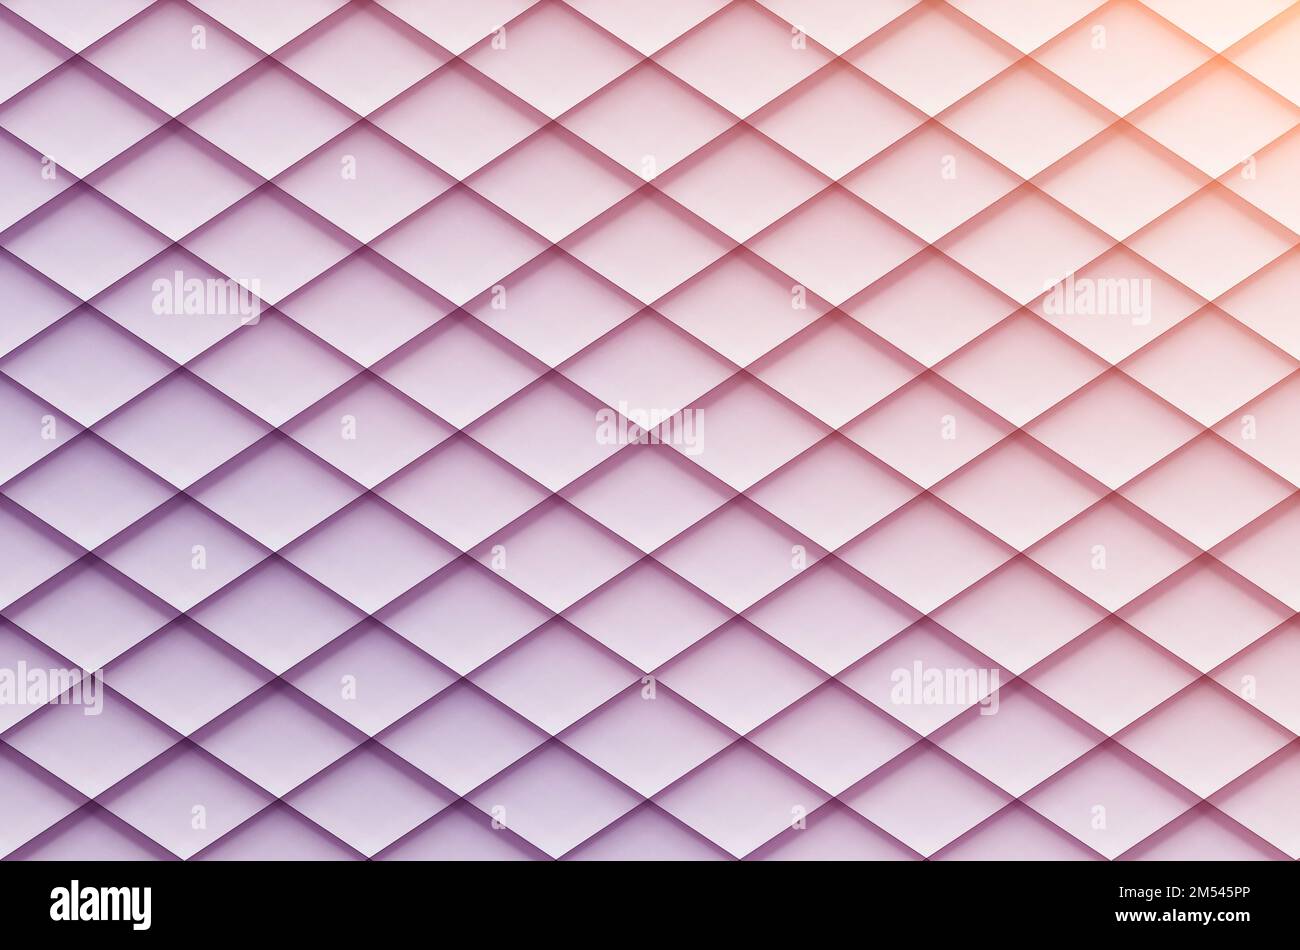 Farbverlauf in Rhombus-Form in Hellrosa- und Magenta-Farben als abstrakter Hintergrund. Stockfoto